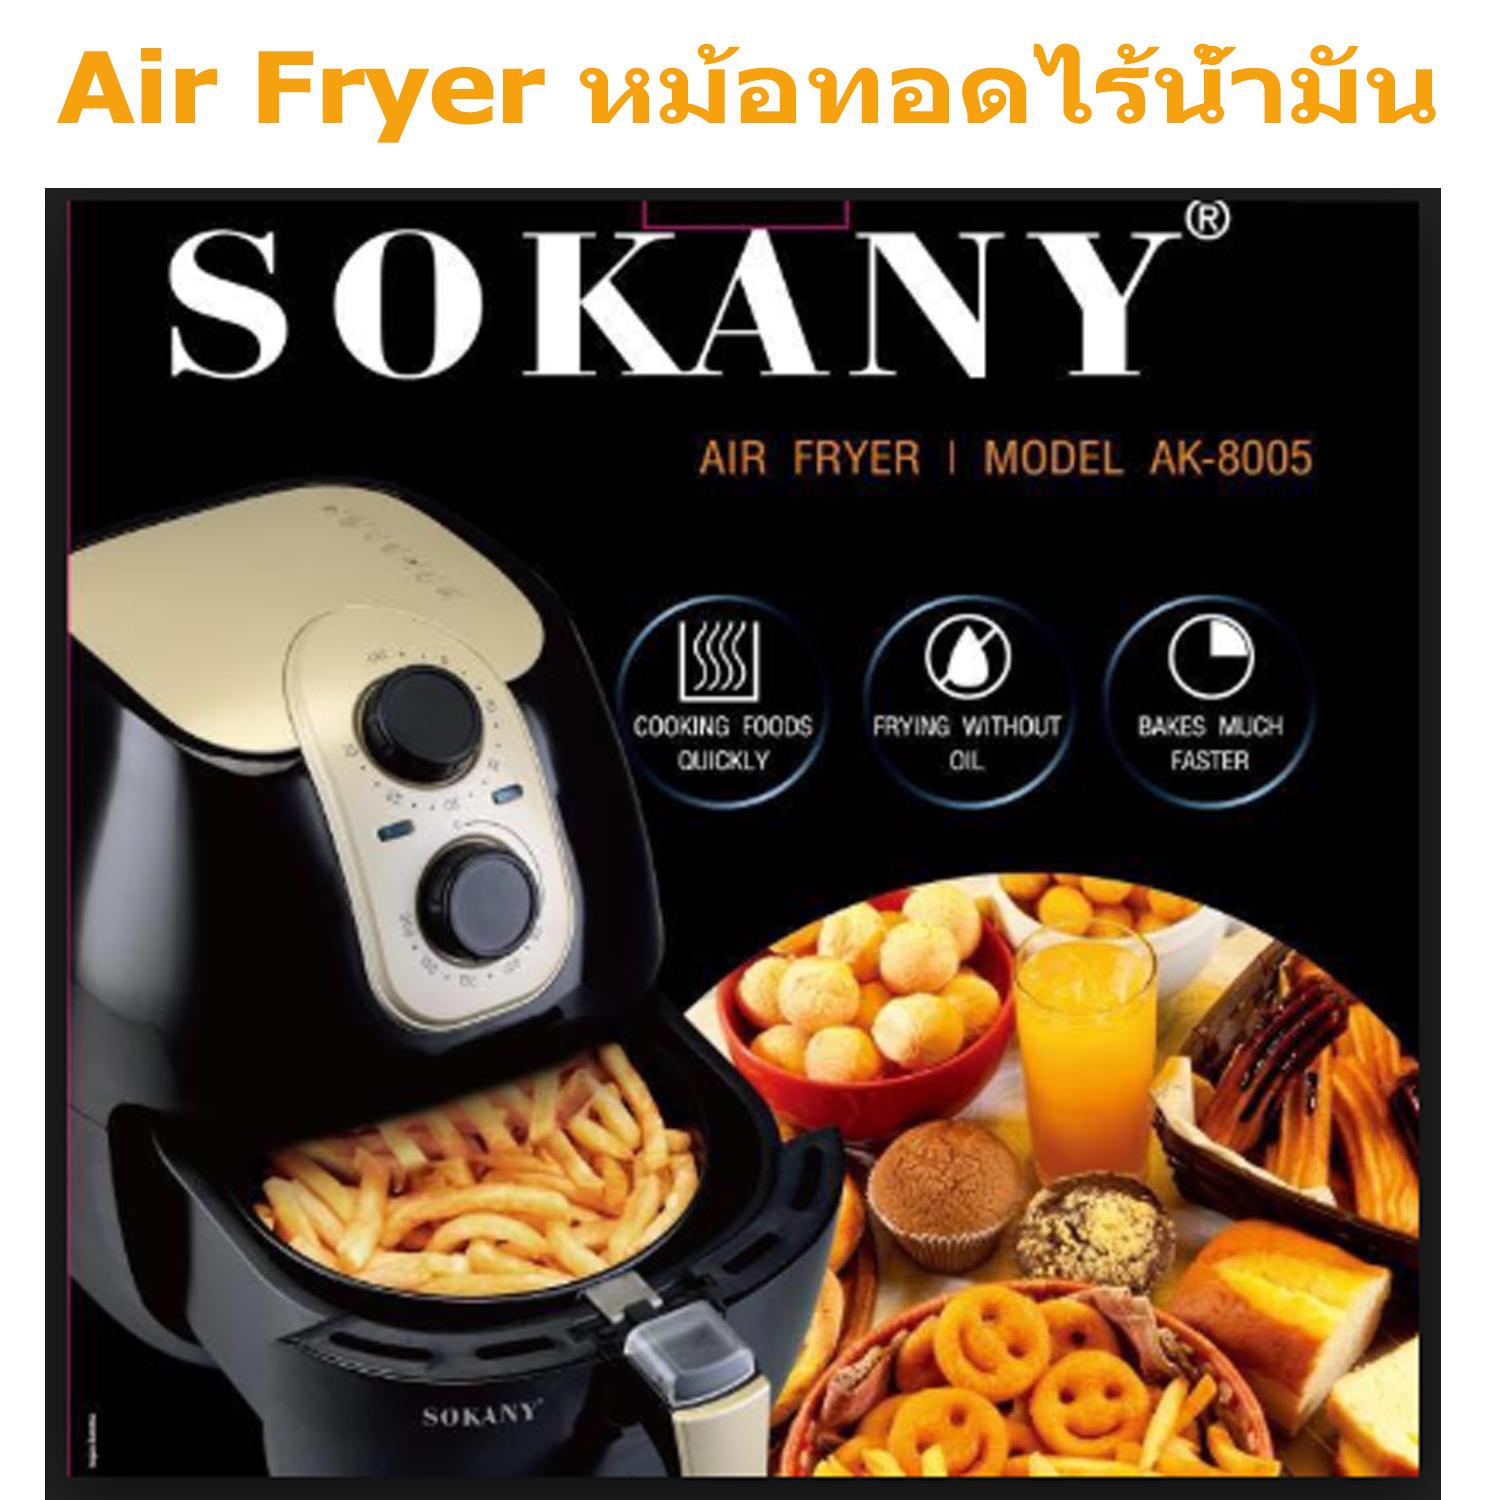 Sokany Air Fryer AK 8005 by PP.STORE หม้อทอดไร้น้ำมัน,หม้อทอดไฟฟ้าสำหรับทำอาหารโดยไม่ต้องใช้น้ำมัน เพื่อสุขภาพ รุ่น AK8005